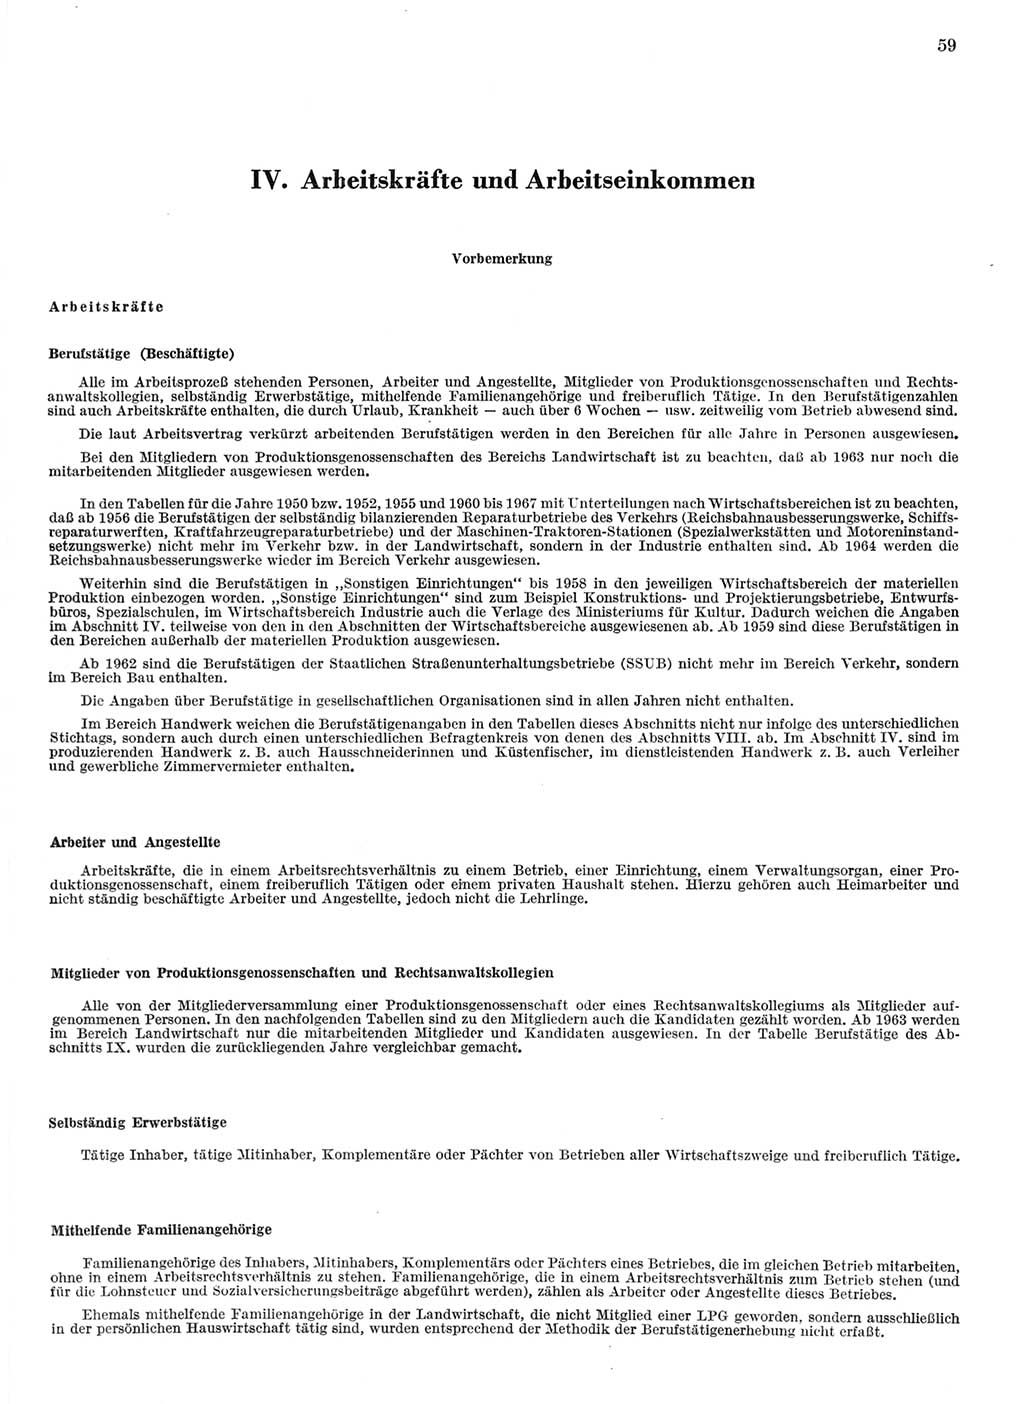 Statistisches Jahrbuch der Deutschen Demokratischen Republik (DDR) 1968, Seite 59 (Stat. Jb. DDR 1968, S. 59)